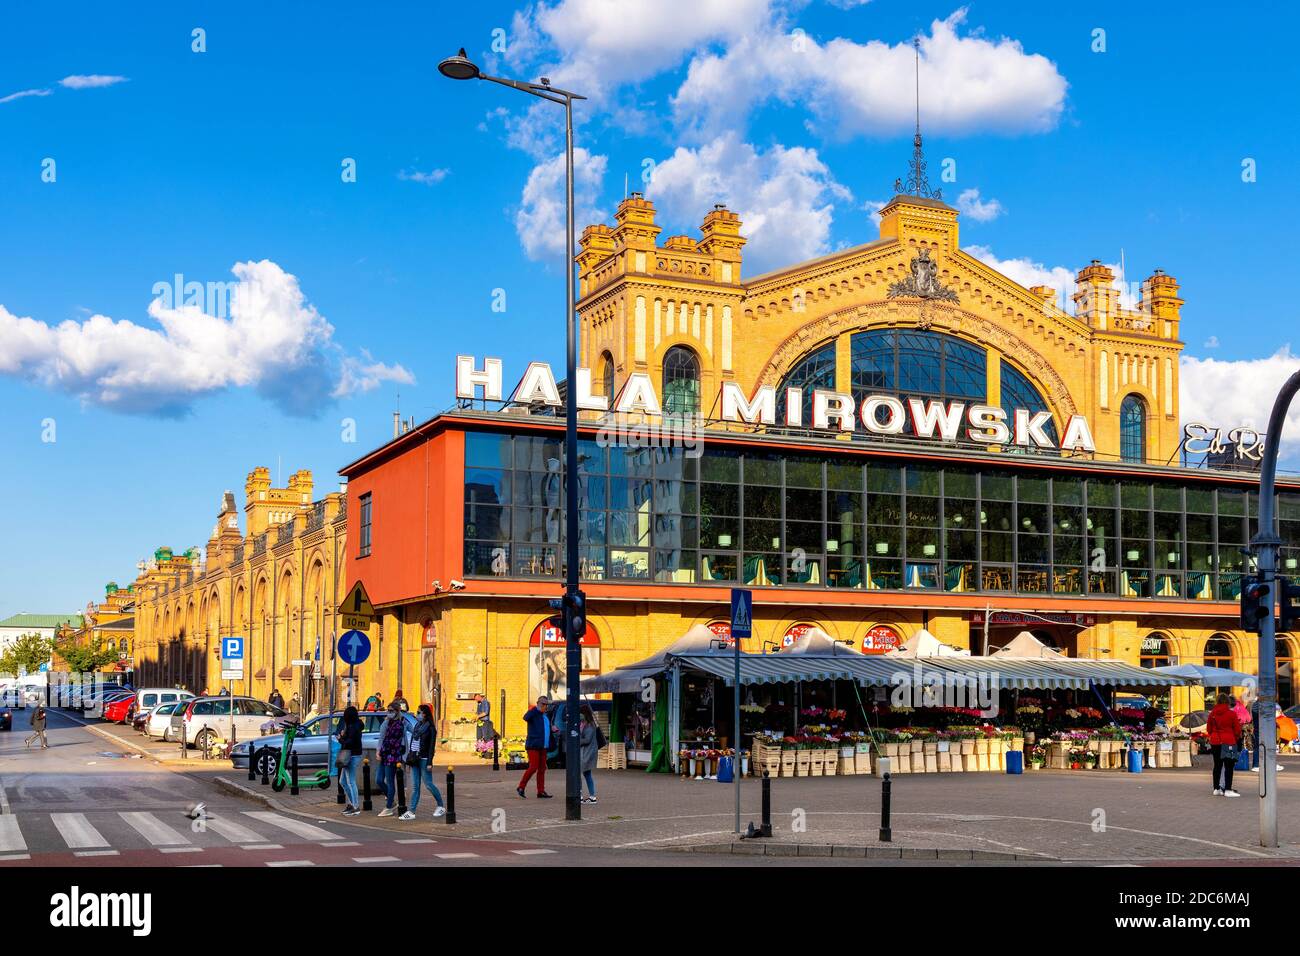 Warsaw hala mirowska immagini e fotografie stock ad alta risoluzione - Alamy